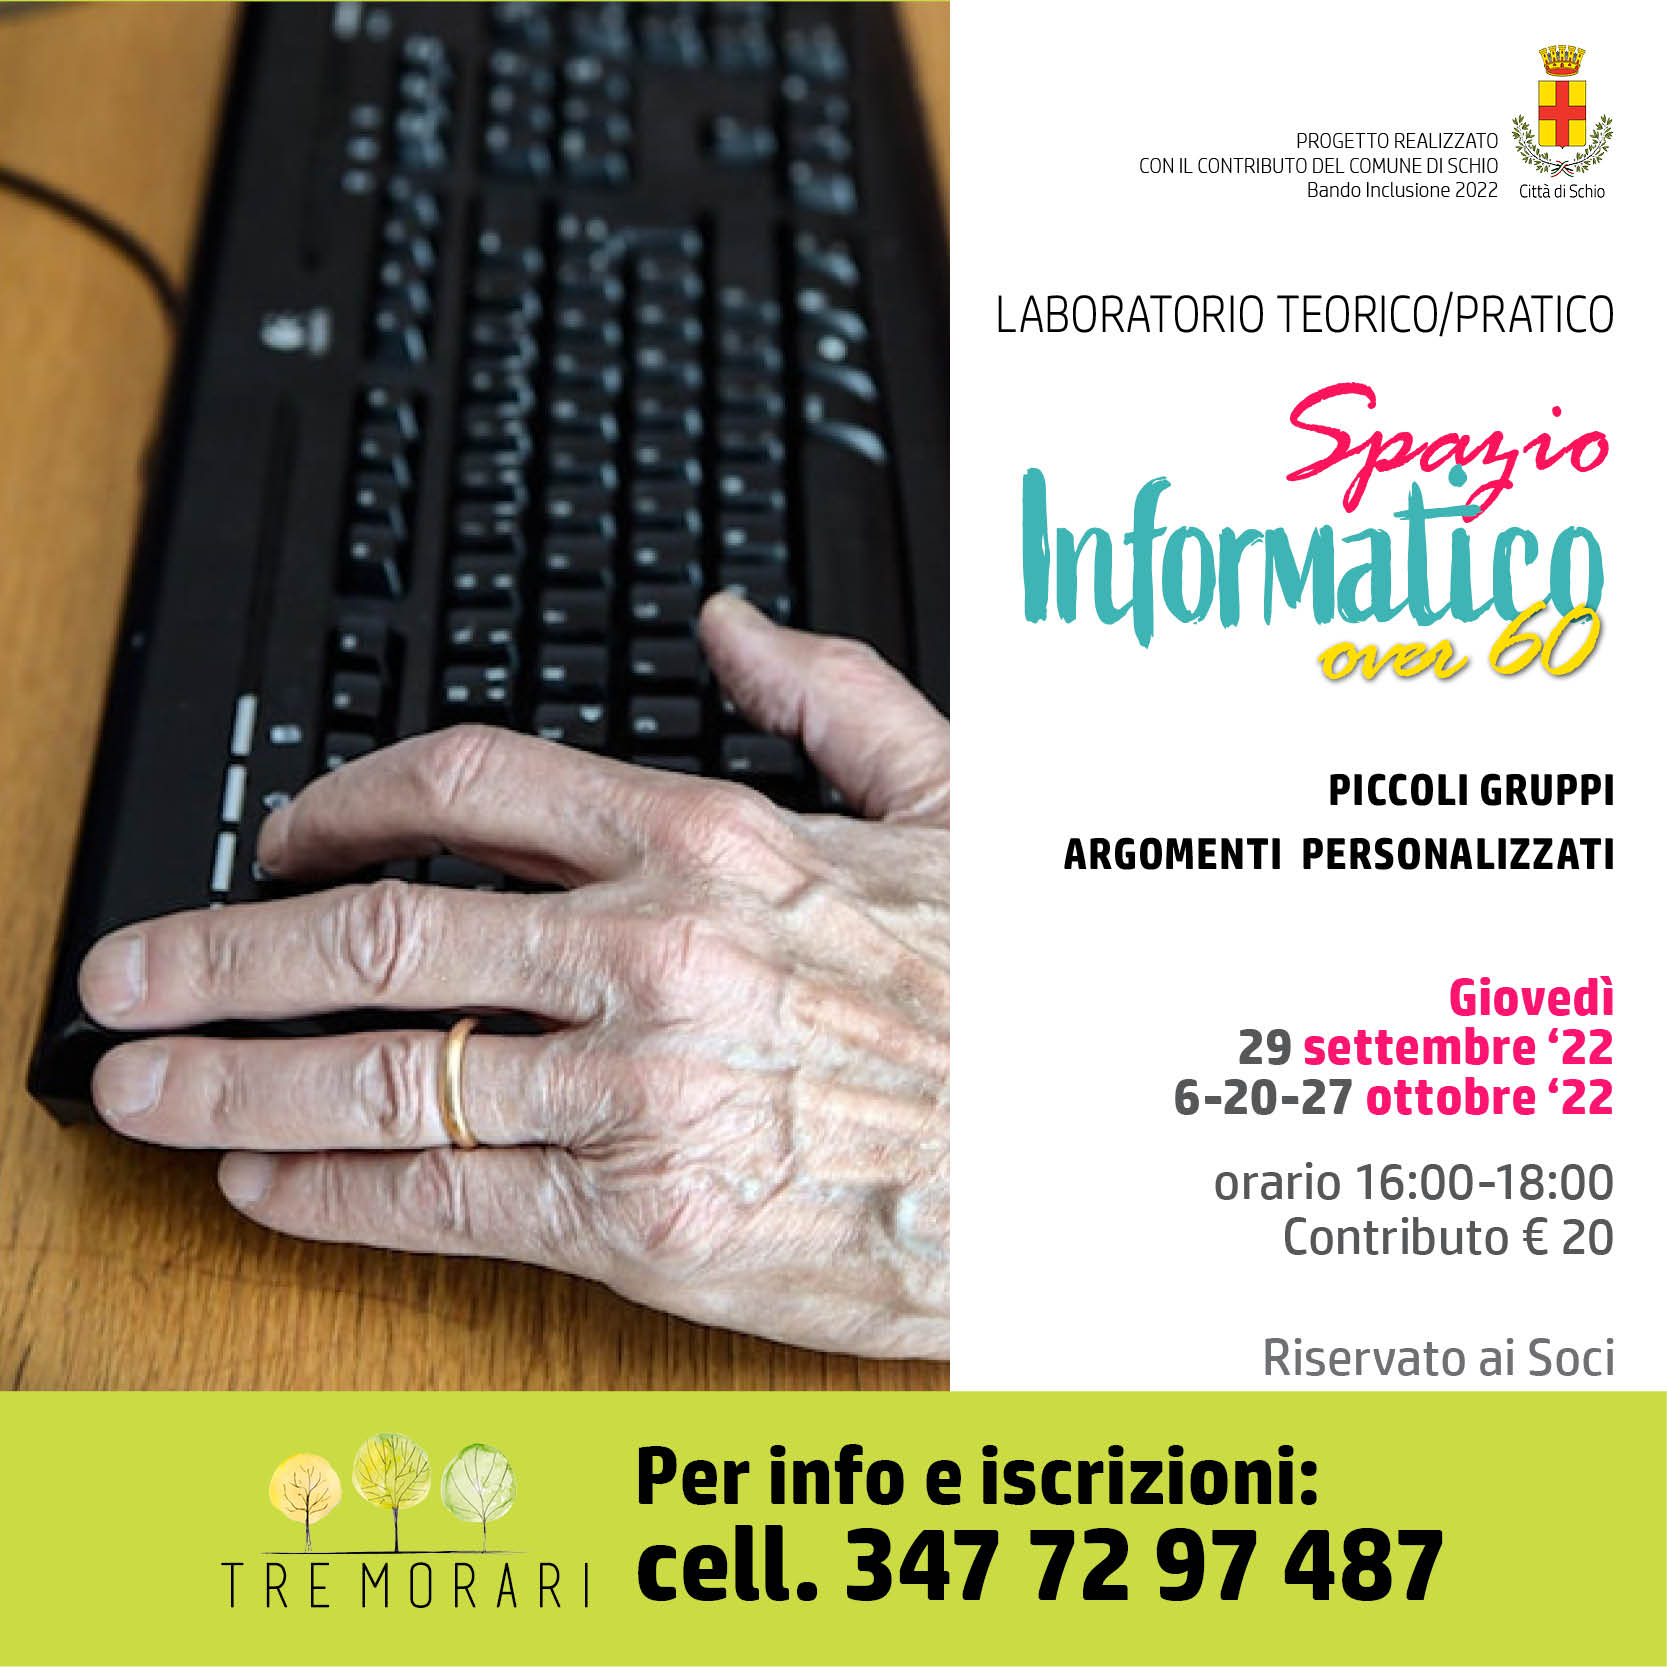 Spazio Informatico over 60